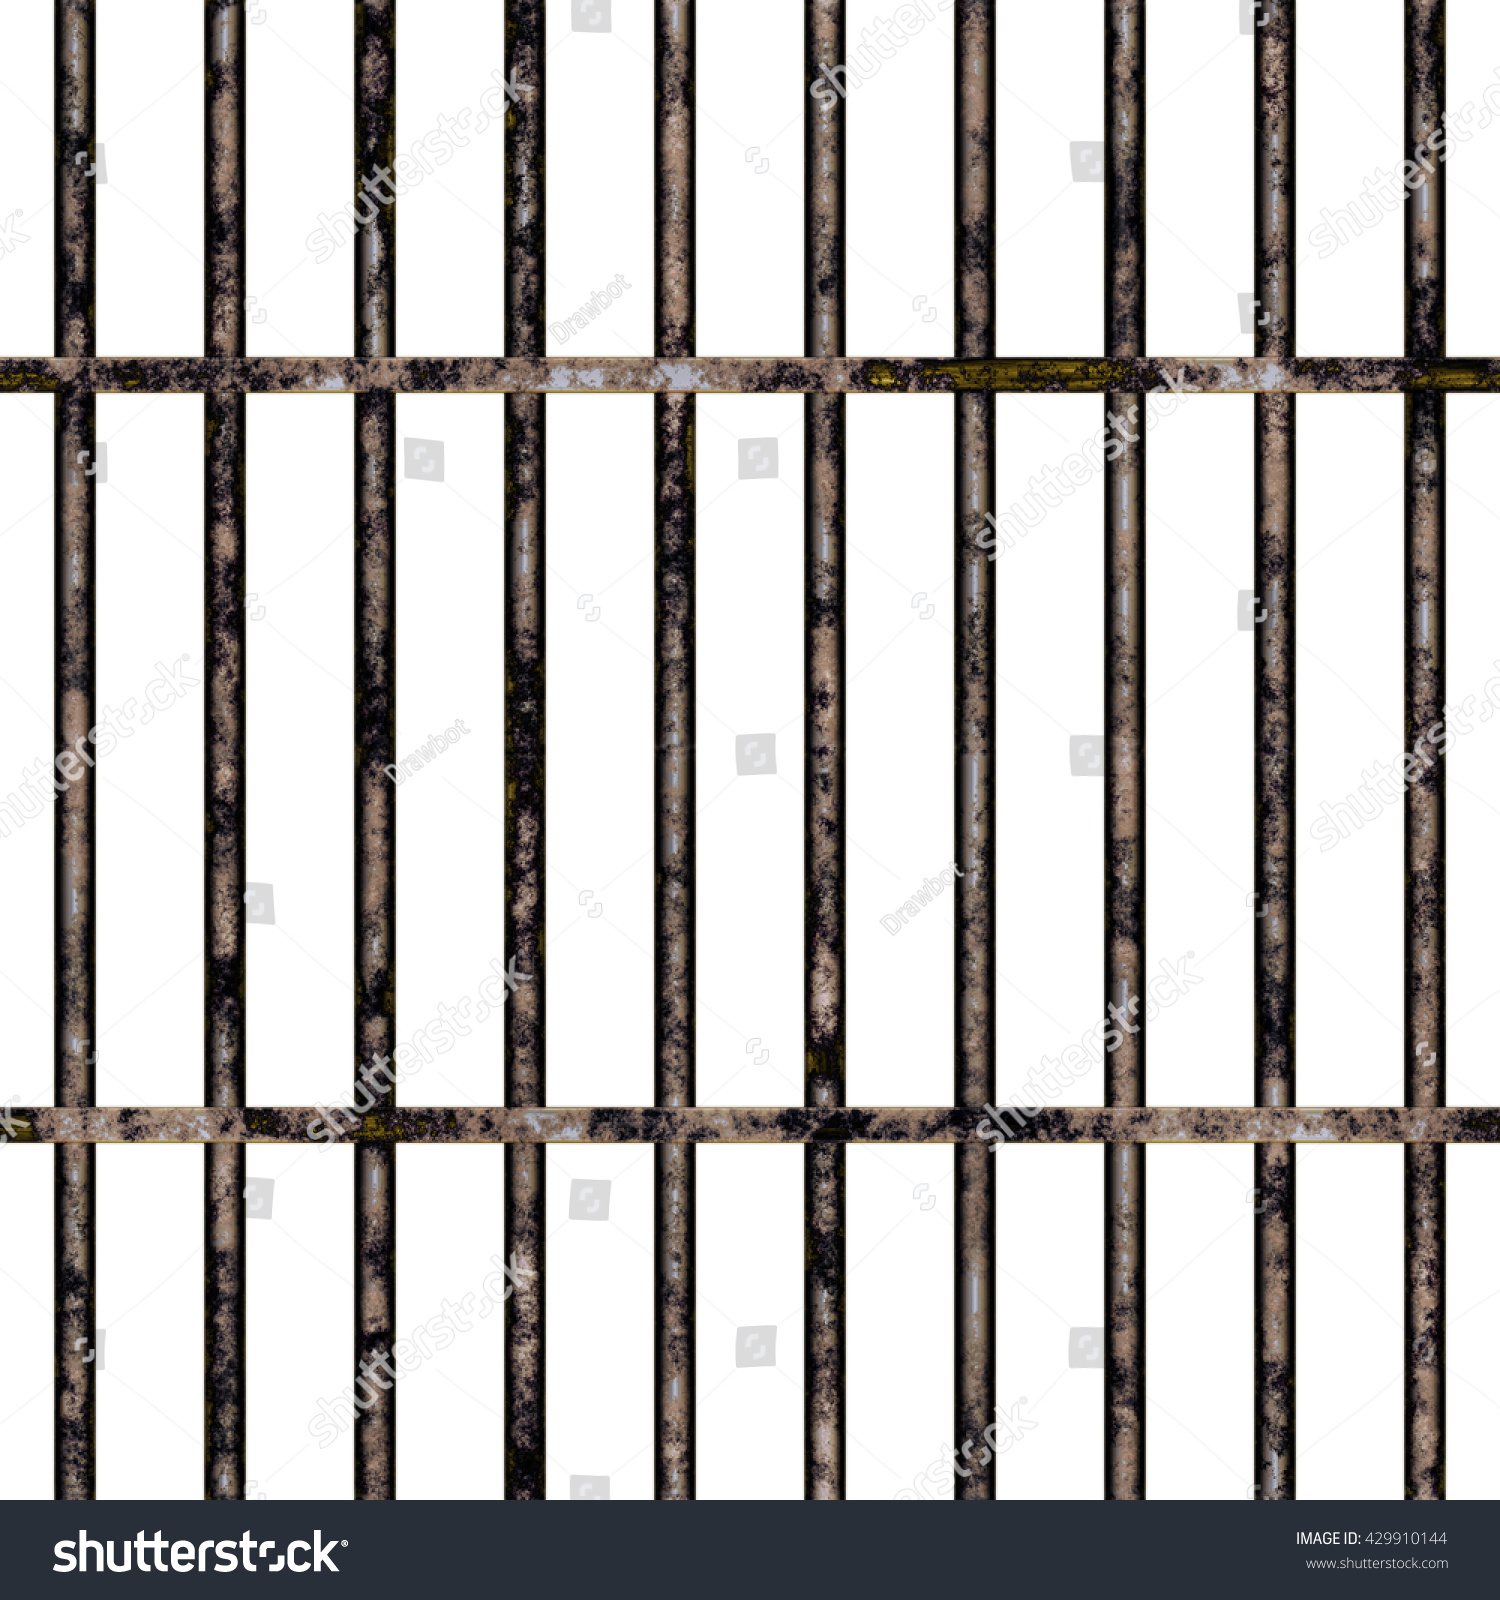 バーフェンスのテクスチャ背景にカラフルな背景の接写 正面図 シームレスなタイル 高解像度の3d Cgレンダリングイラスト のイラスト素材